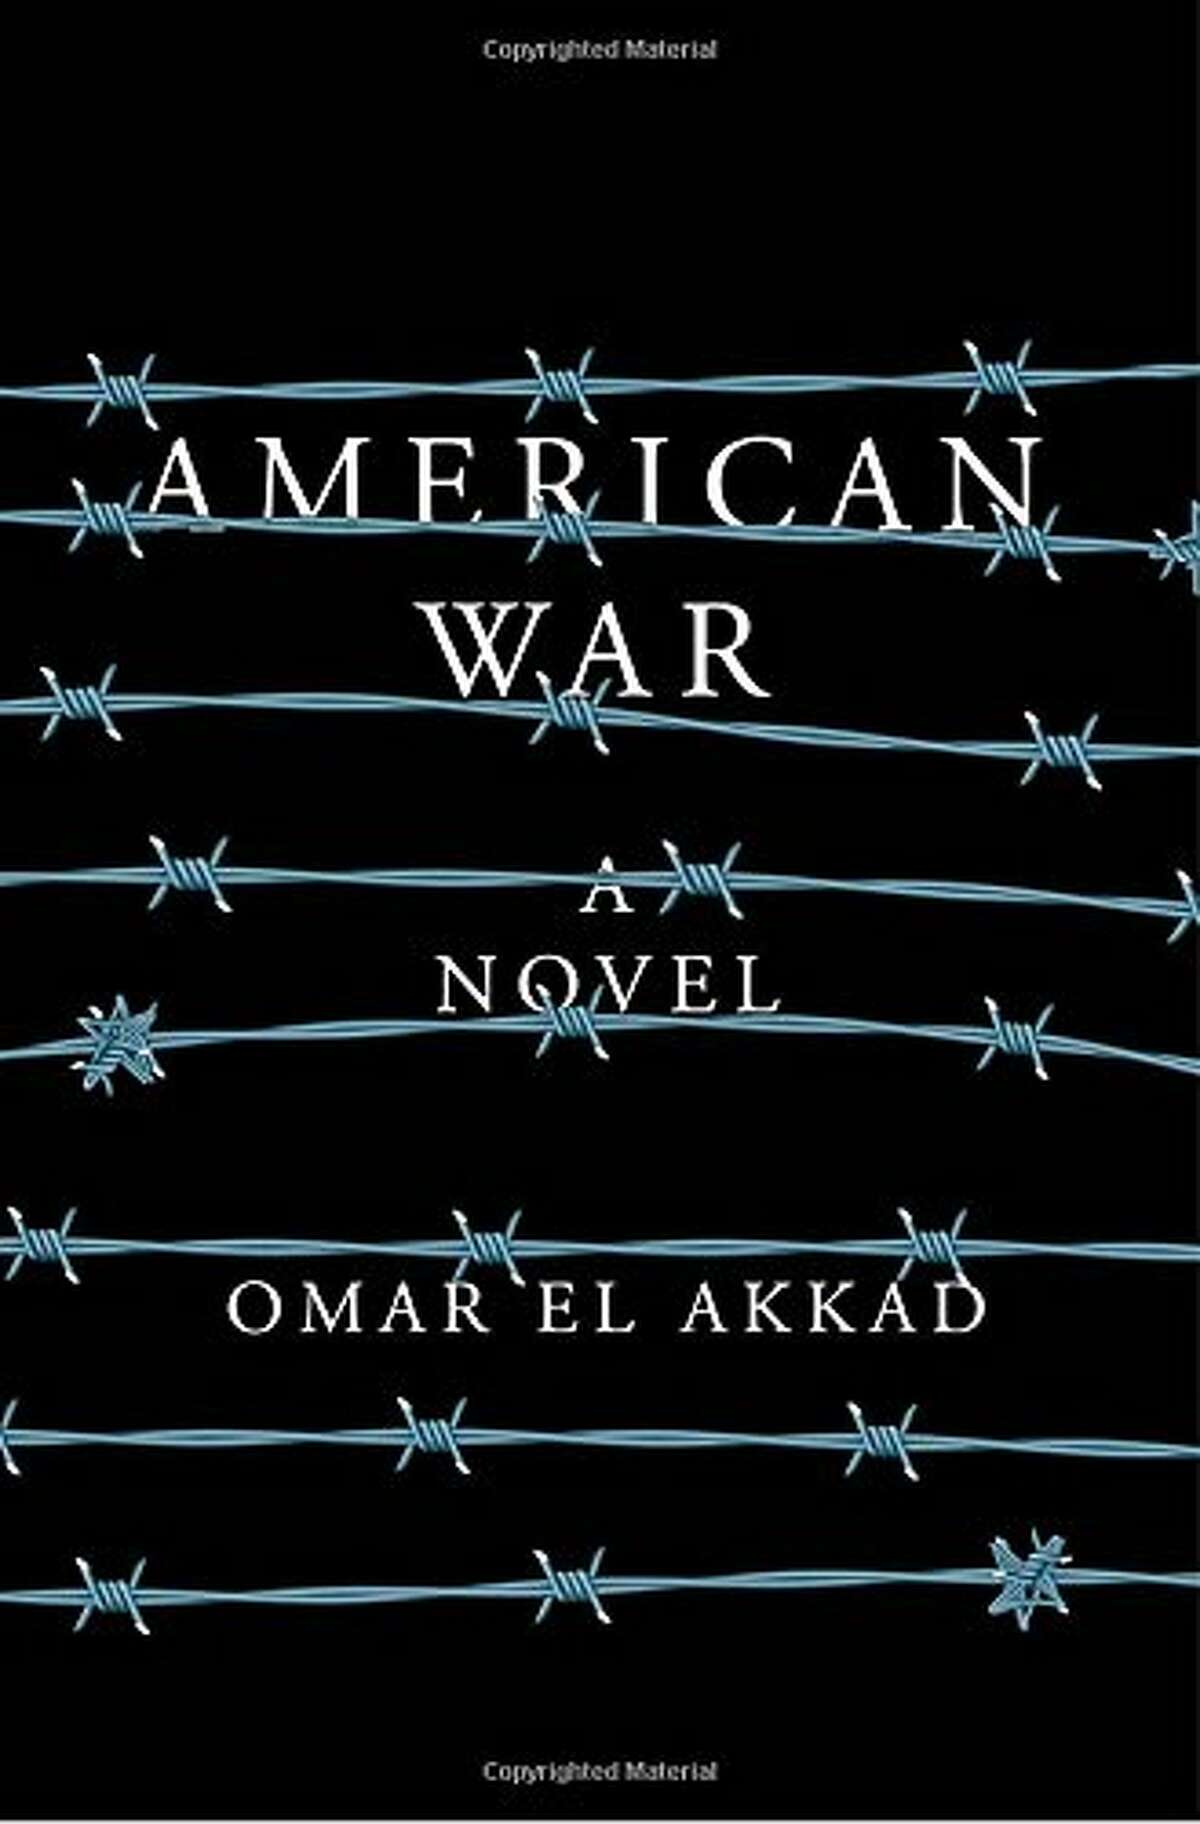 "American War" by Omar El Akkad